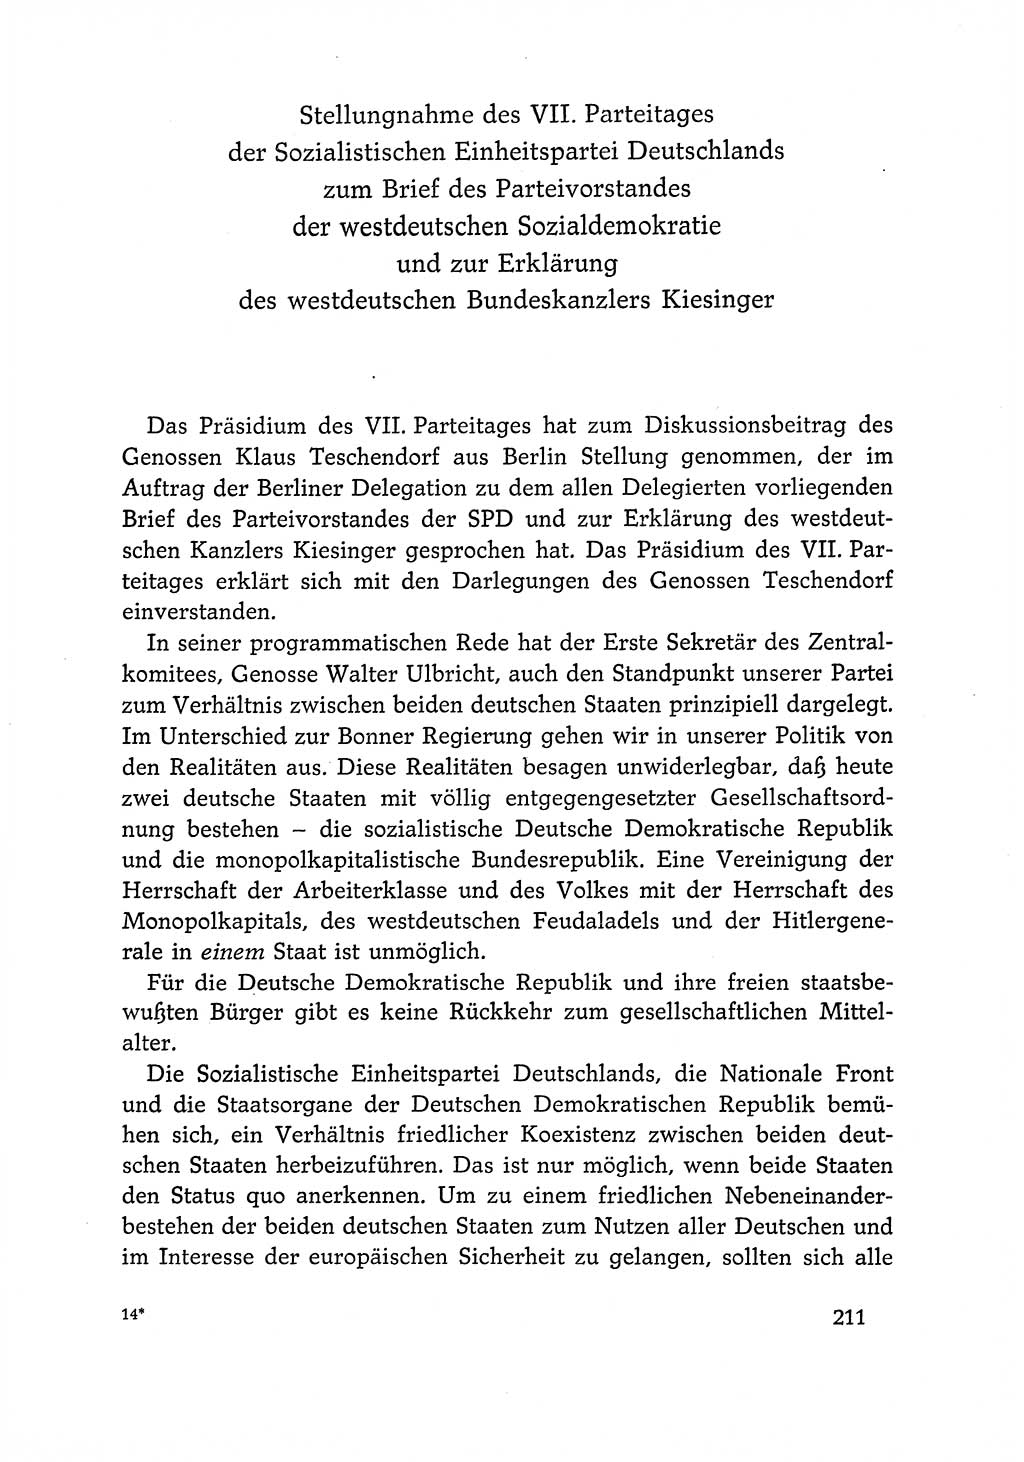 Dokumente der Sozialistischen Einheitspartei Deutschlands (SED) [Deutsche Demokratische Republik (DDR)] 1966-1967, Seite 211 (Dok. SED DDR 1966-1967, S. 211)